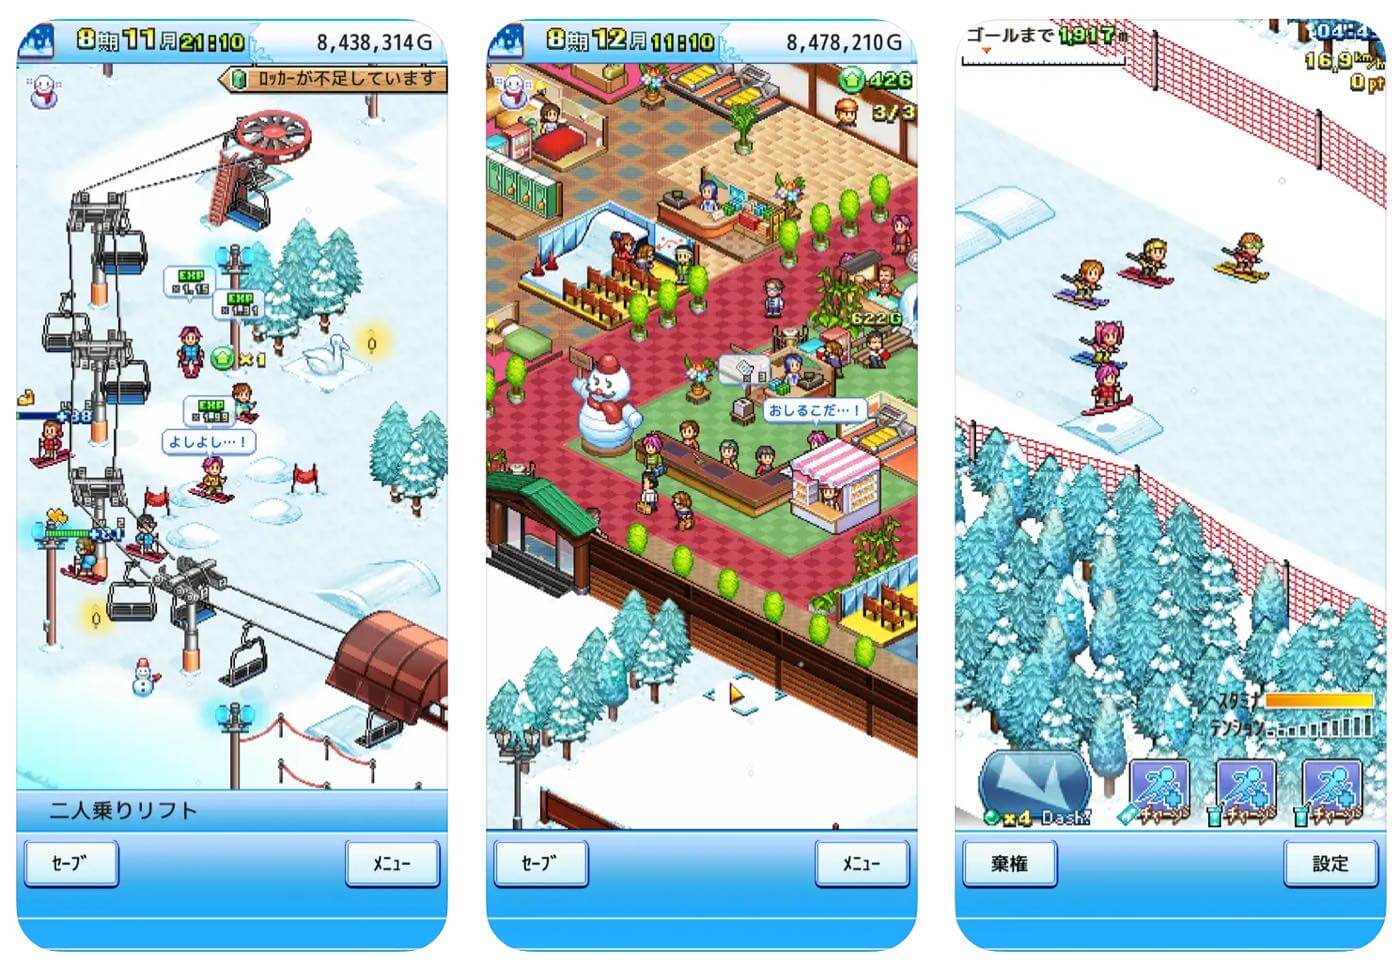 【明日まで】カイロソフトのスキー場経営ゲーム『きらめきスキー白書』、iOS版に続いてAndroid版も大雪でうっかり指が滑って無料に